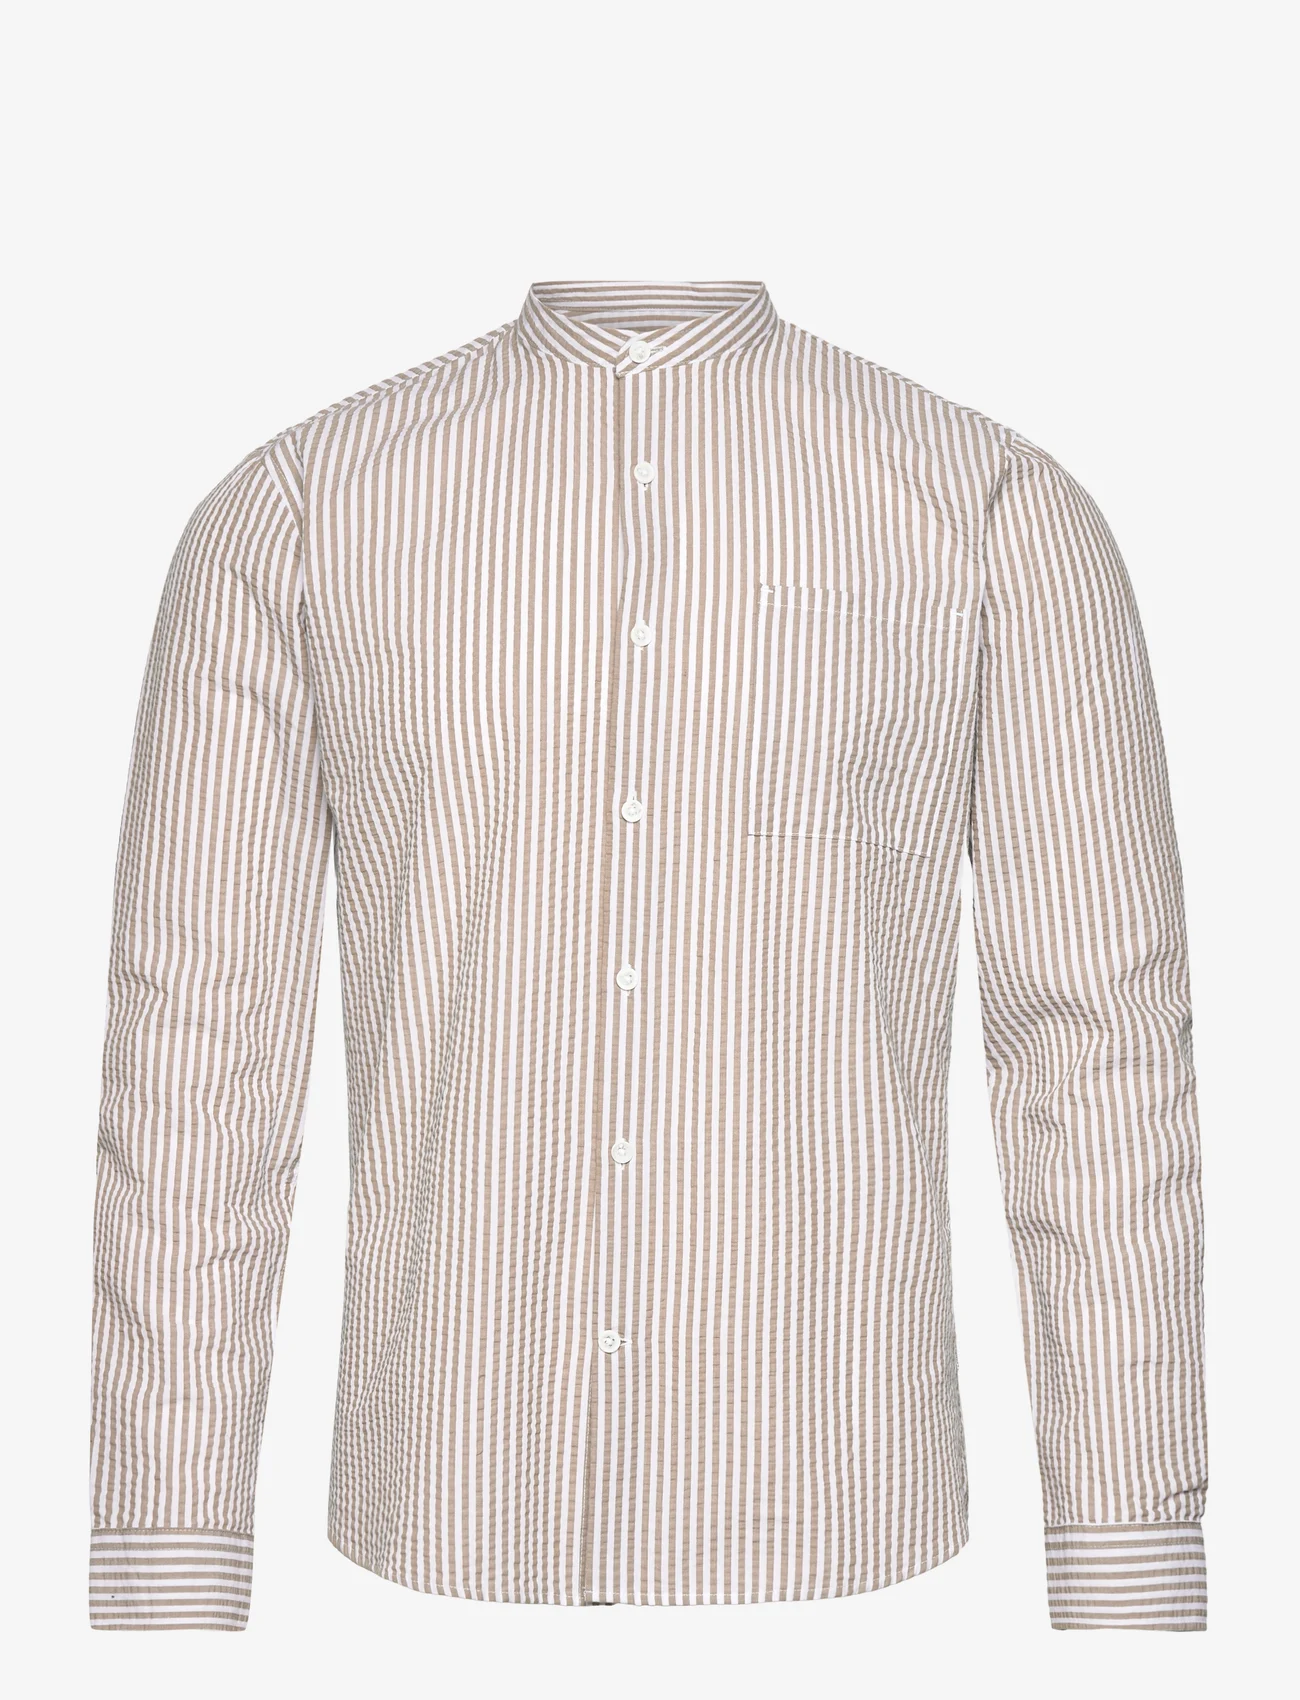 Lindbergh - Seersucker manderin shirt L/S - avslappede skjorter - sand - 0